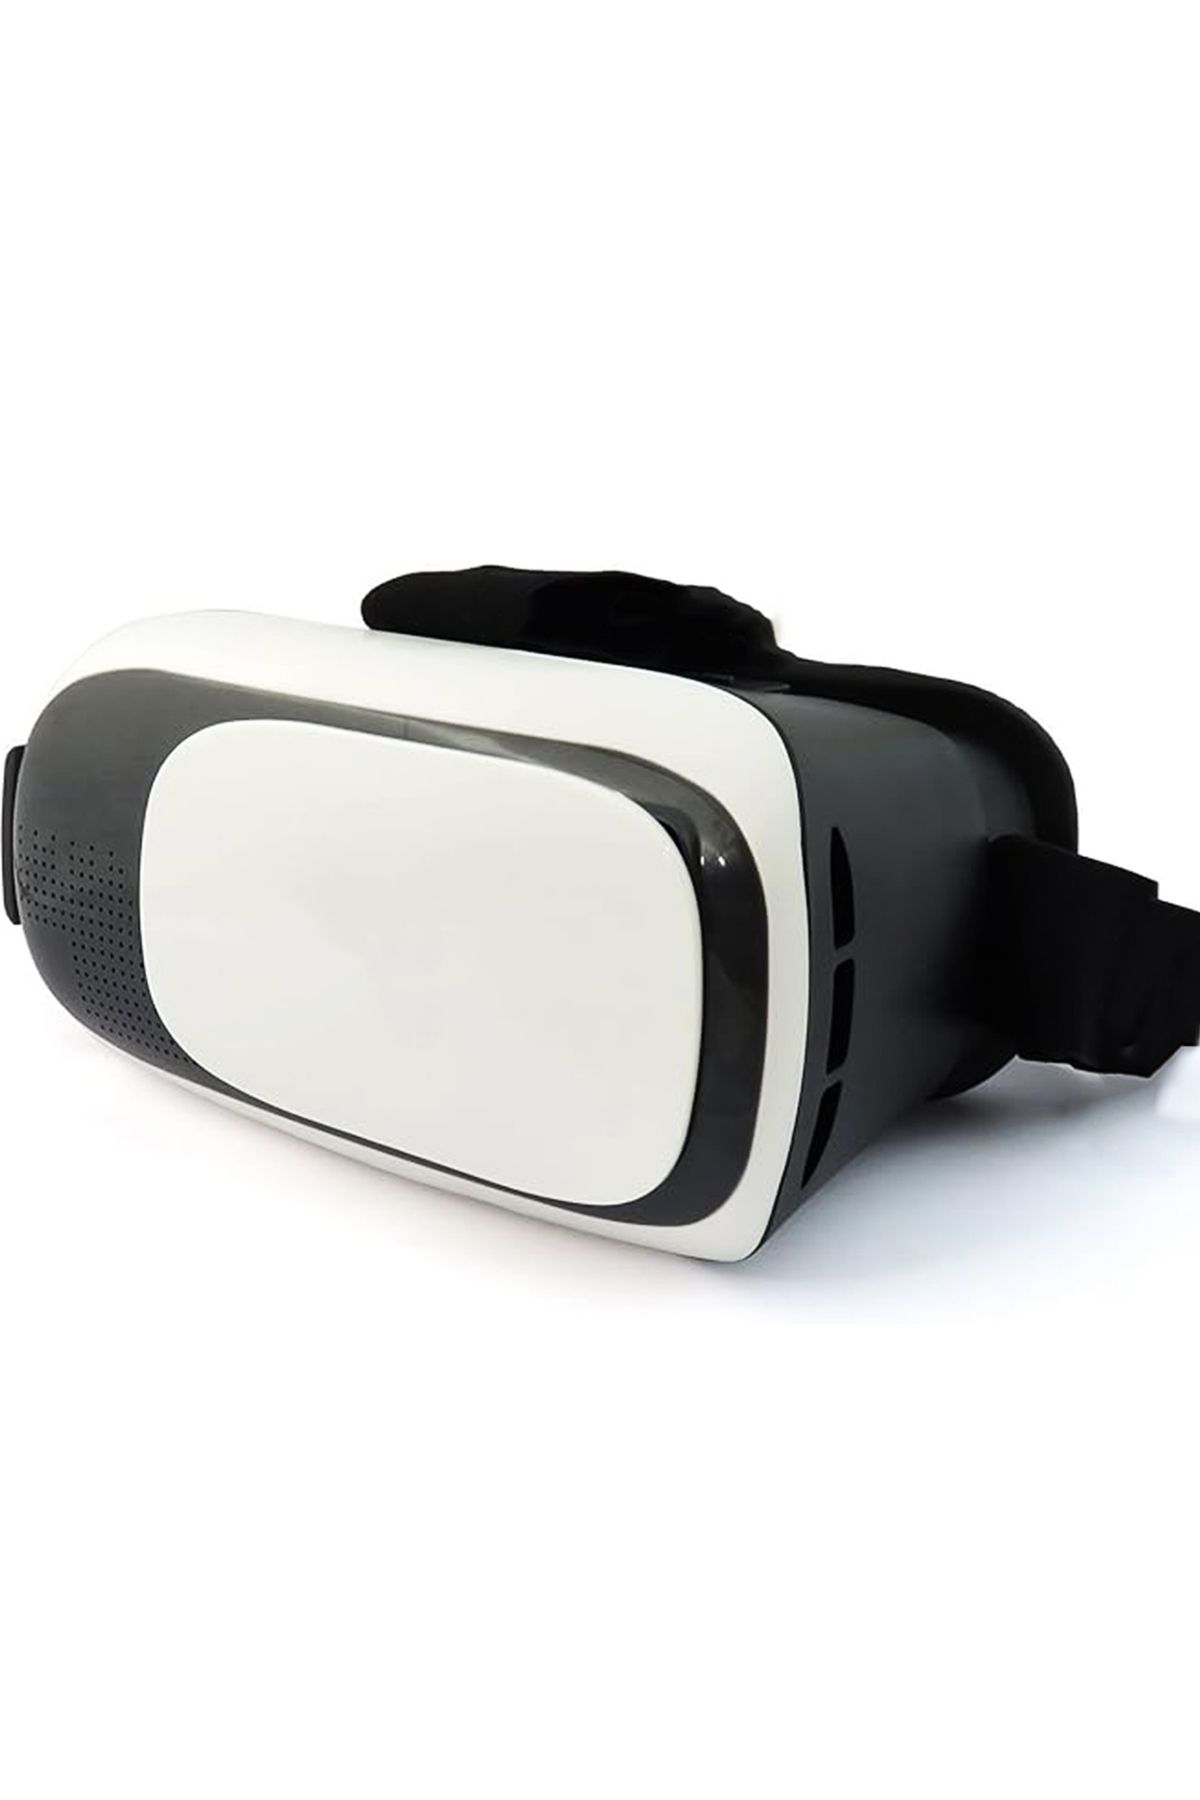 Microcase VR 3D Sanal Gerçeklik Gözlüğü - AL4188